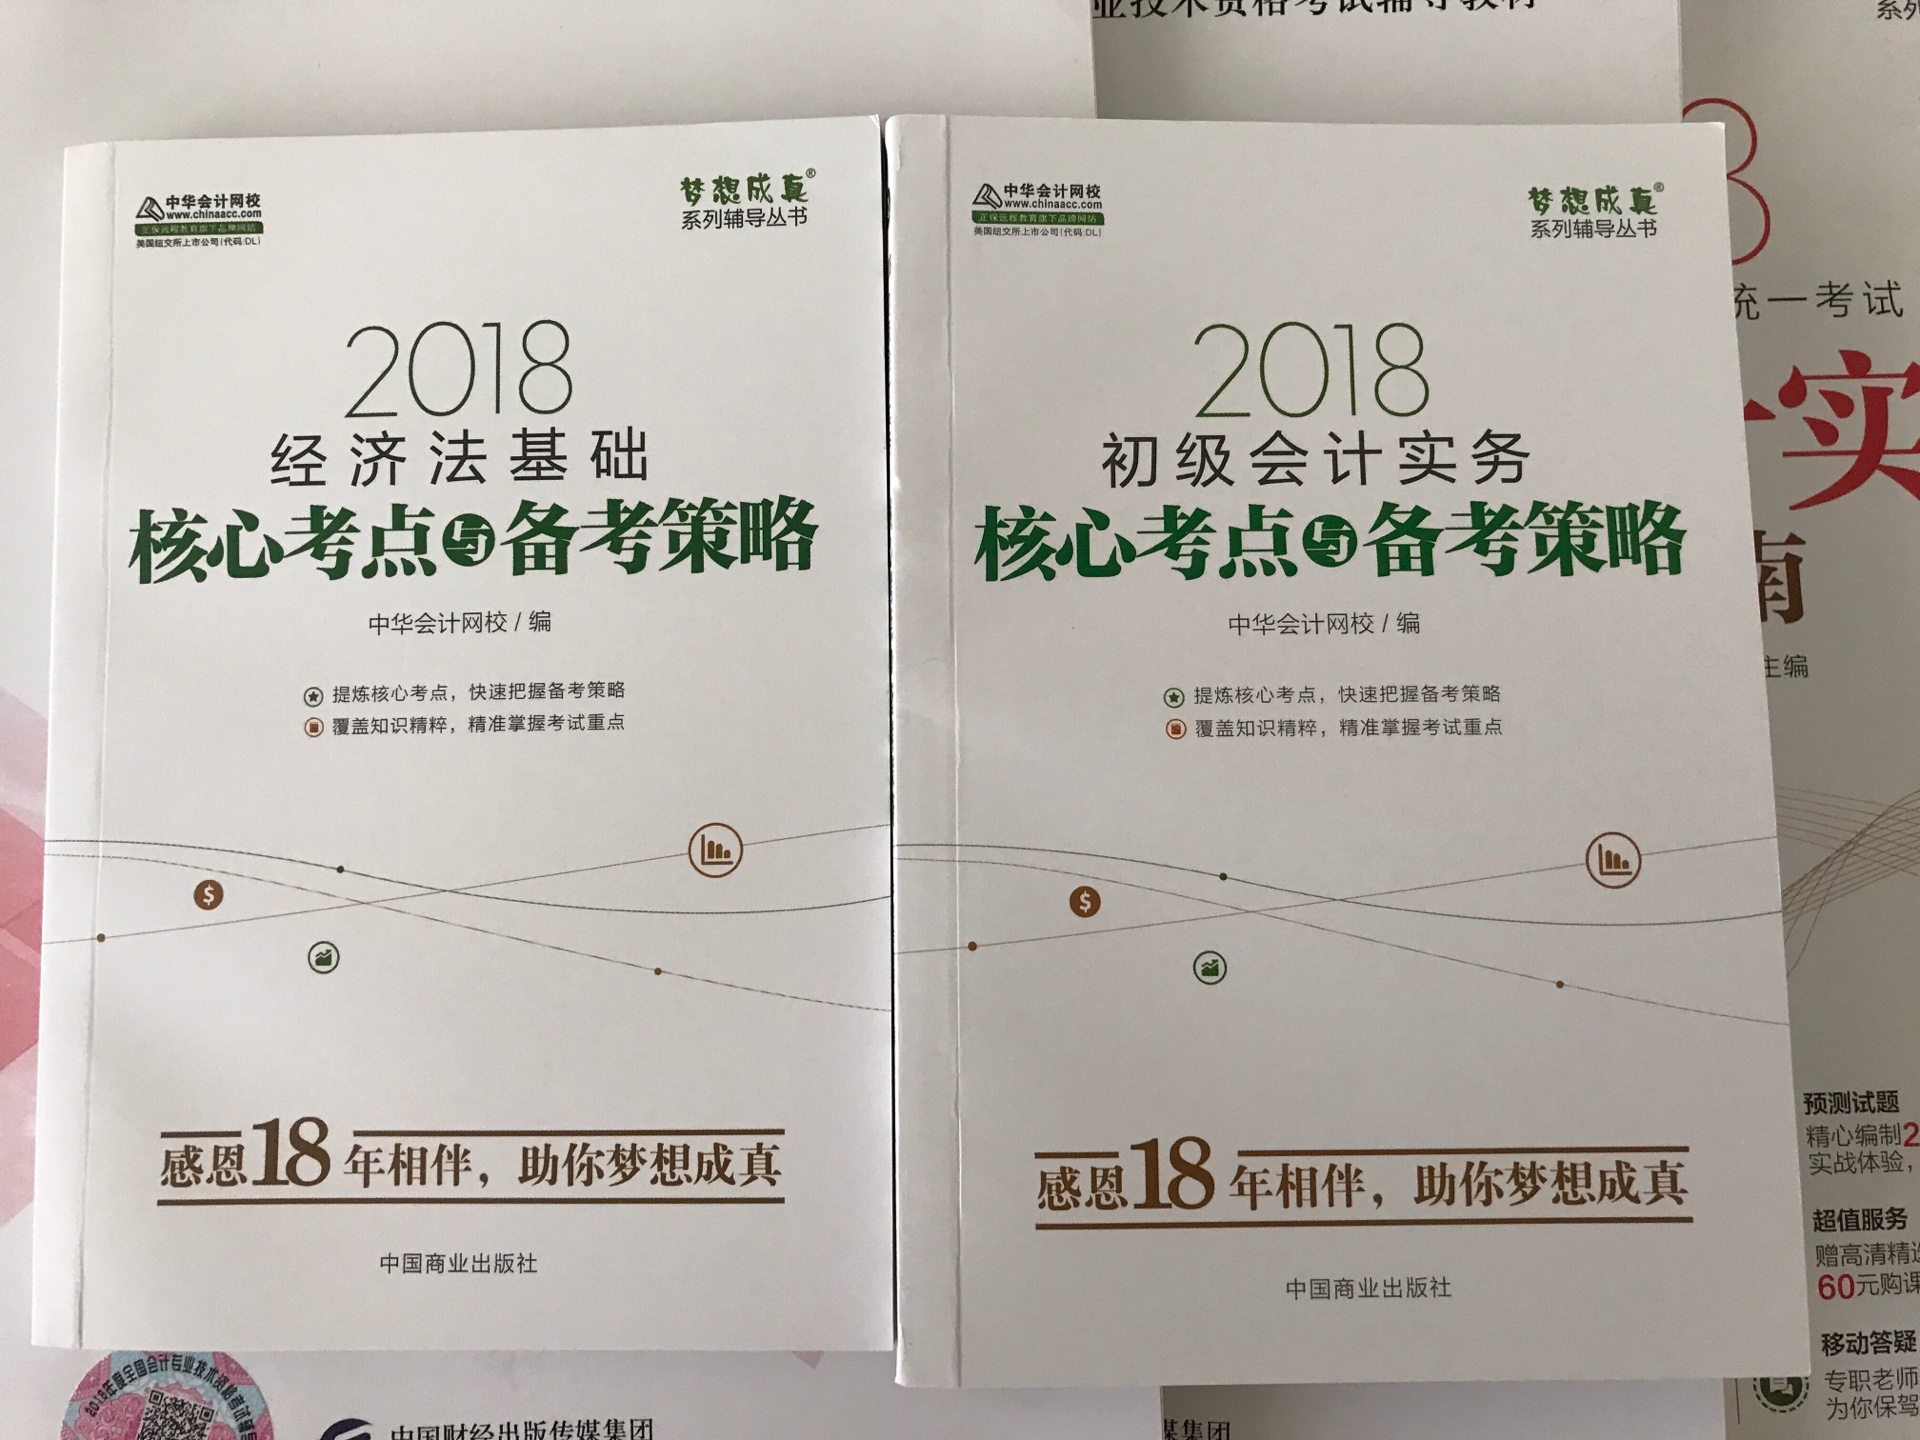 书本棒棒的。而且还送了两本中华会计网校的核心考点与备考策略的小书！